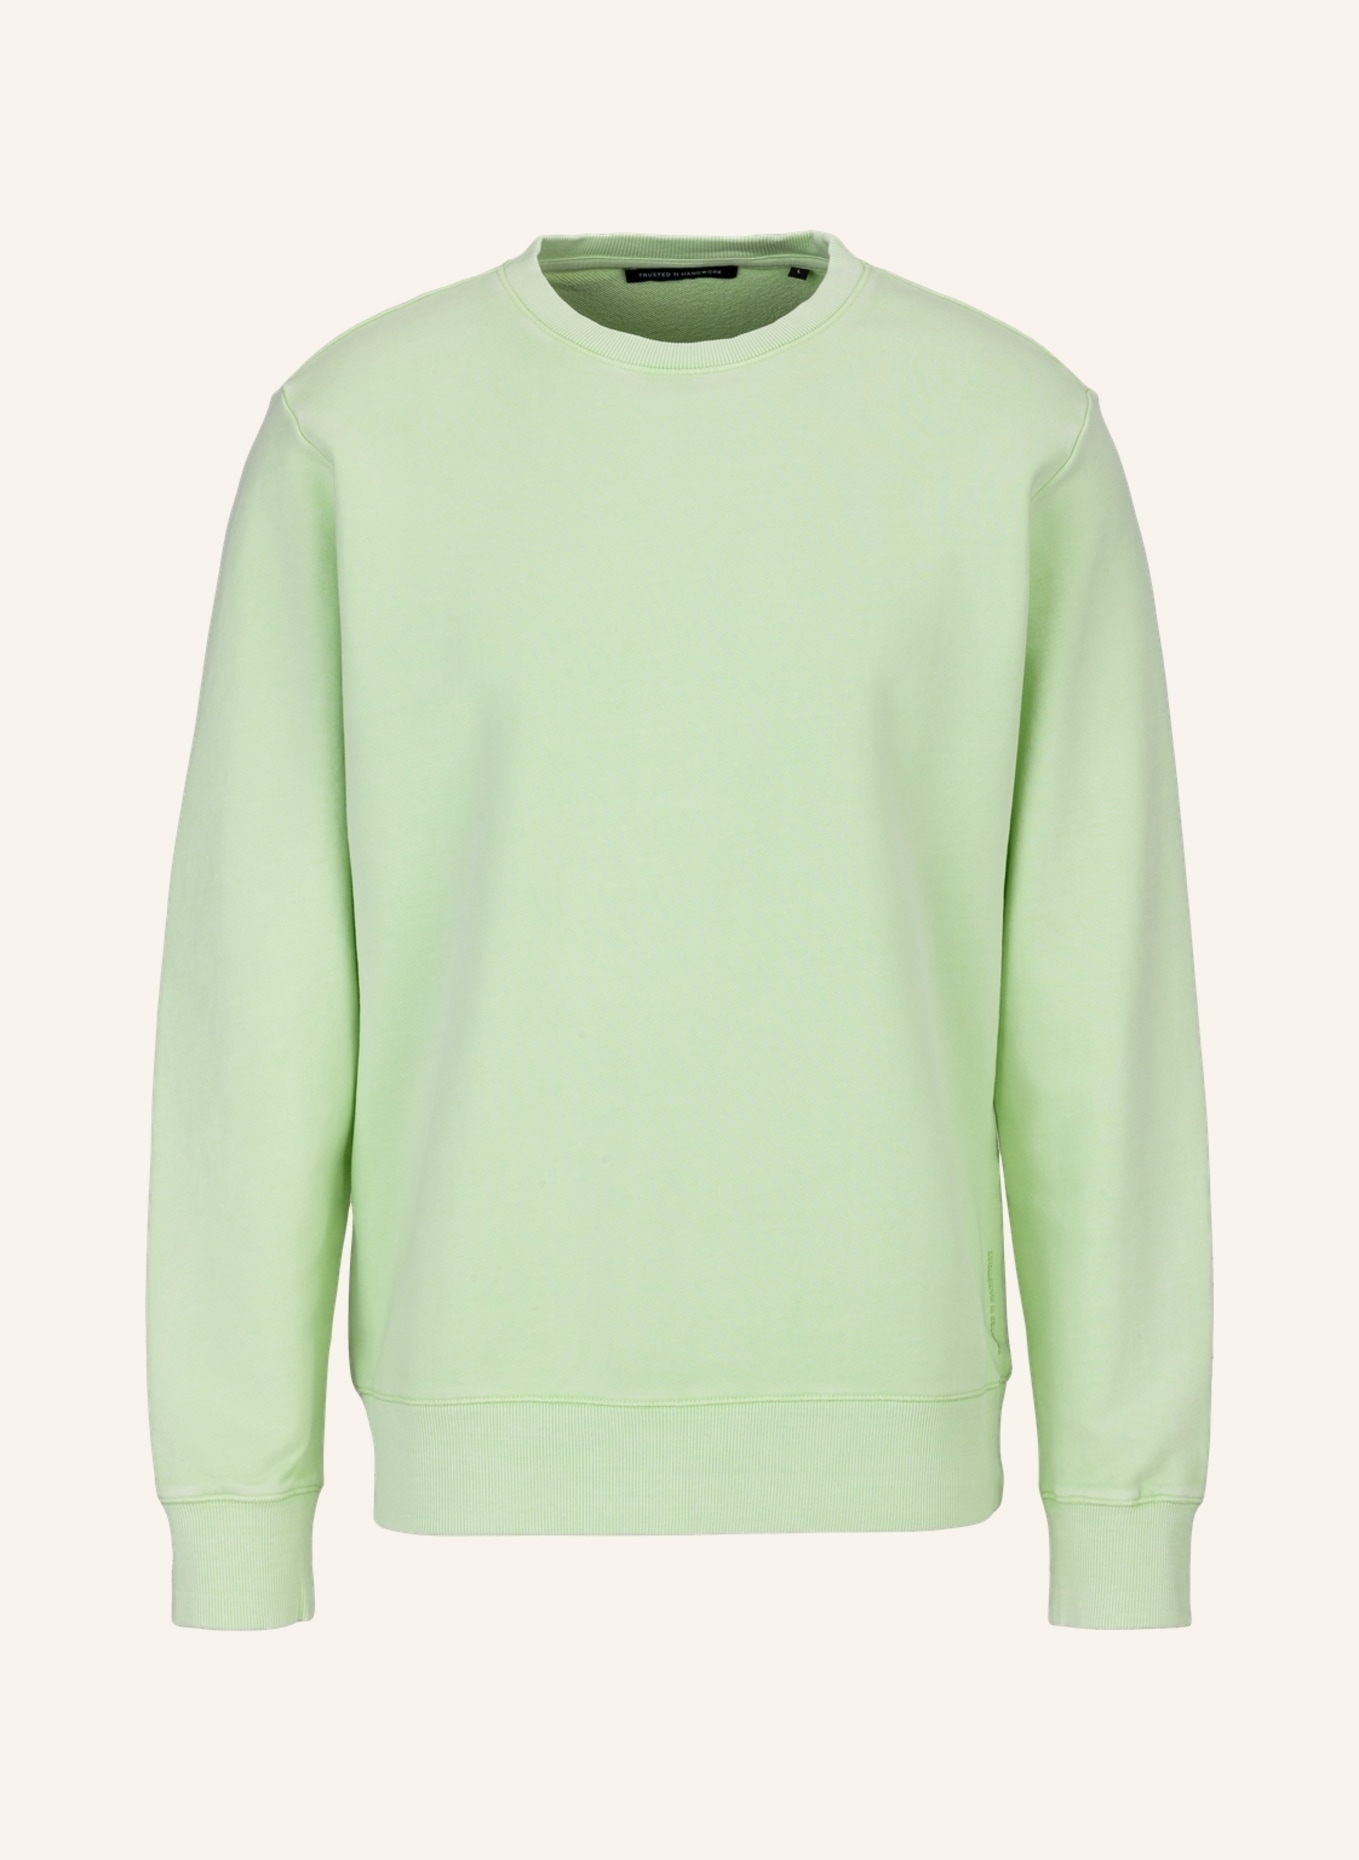 TRUSTED HANDWORK Sweatshirt BRISBANE, Farbe: HELLGRÜN (Bild 1)